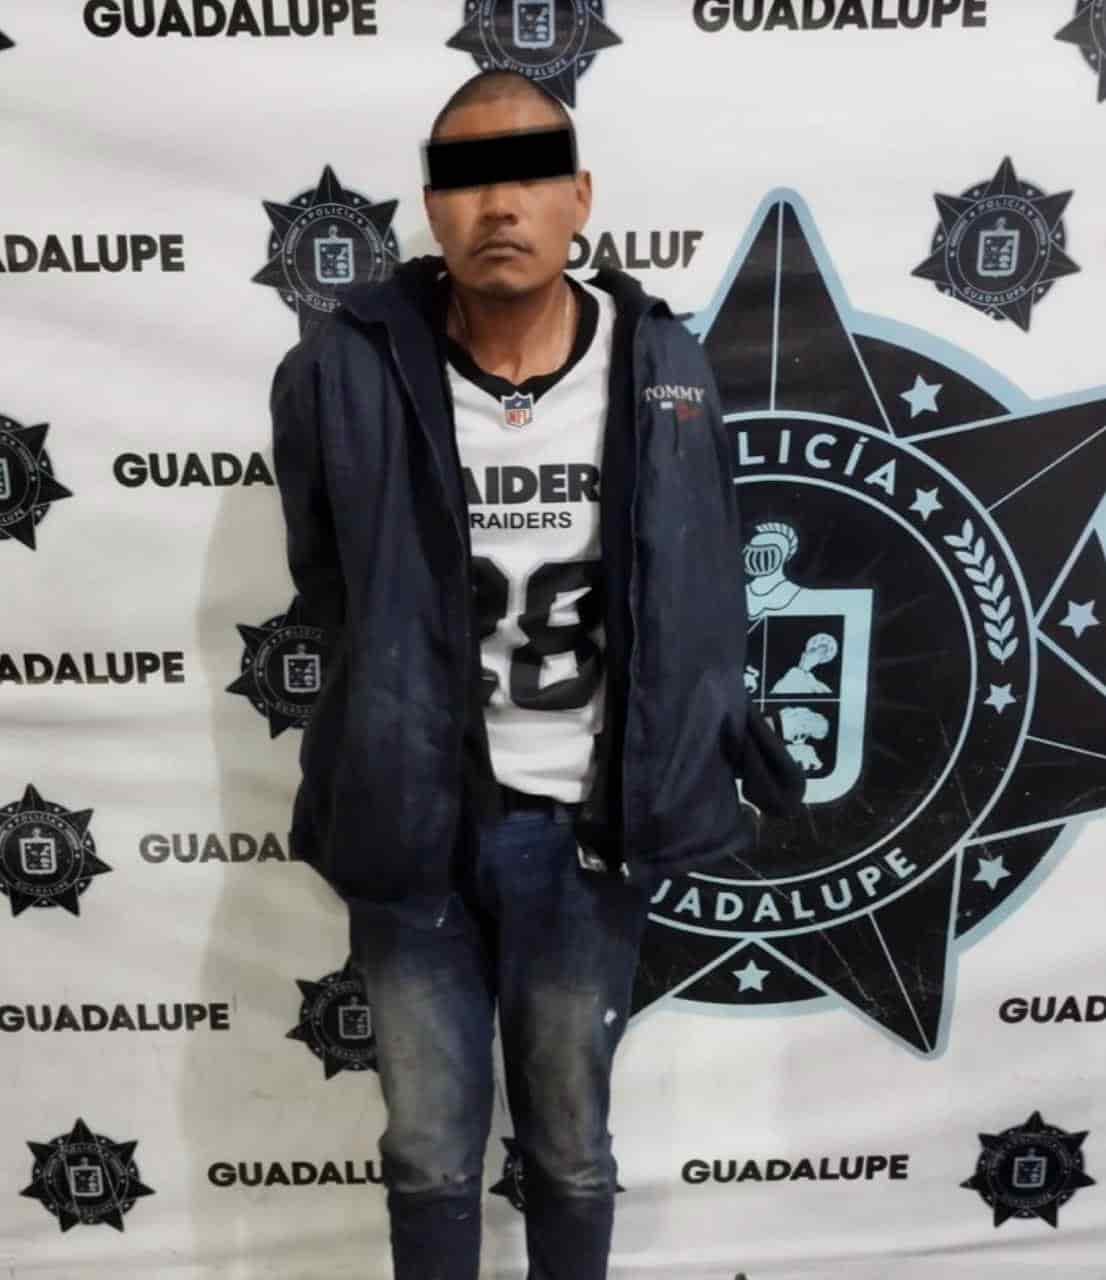 Un motociclista que portaba un arma de fuego y droga, además de presuntamente haber participado en hechos delictivos en Guadalupe y la zona metropolitana de Monterrey, fue detenido por la Unidad de Investigación Criminal en la Colonia Crispín Treviño, en Ciudad Guadalupe.